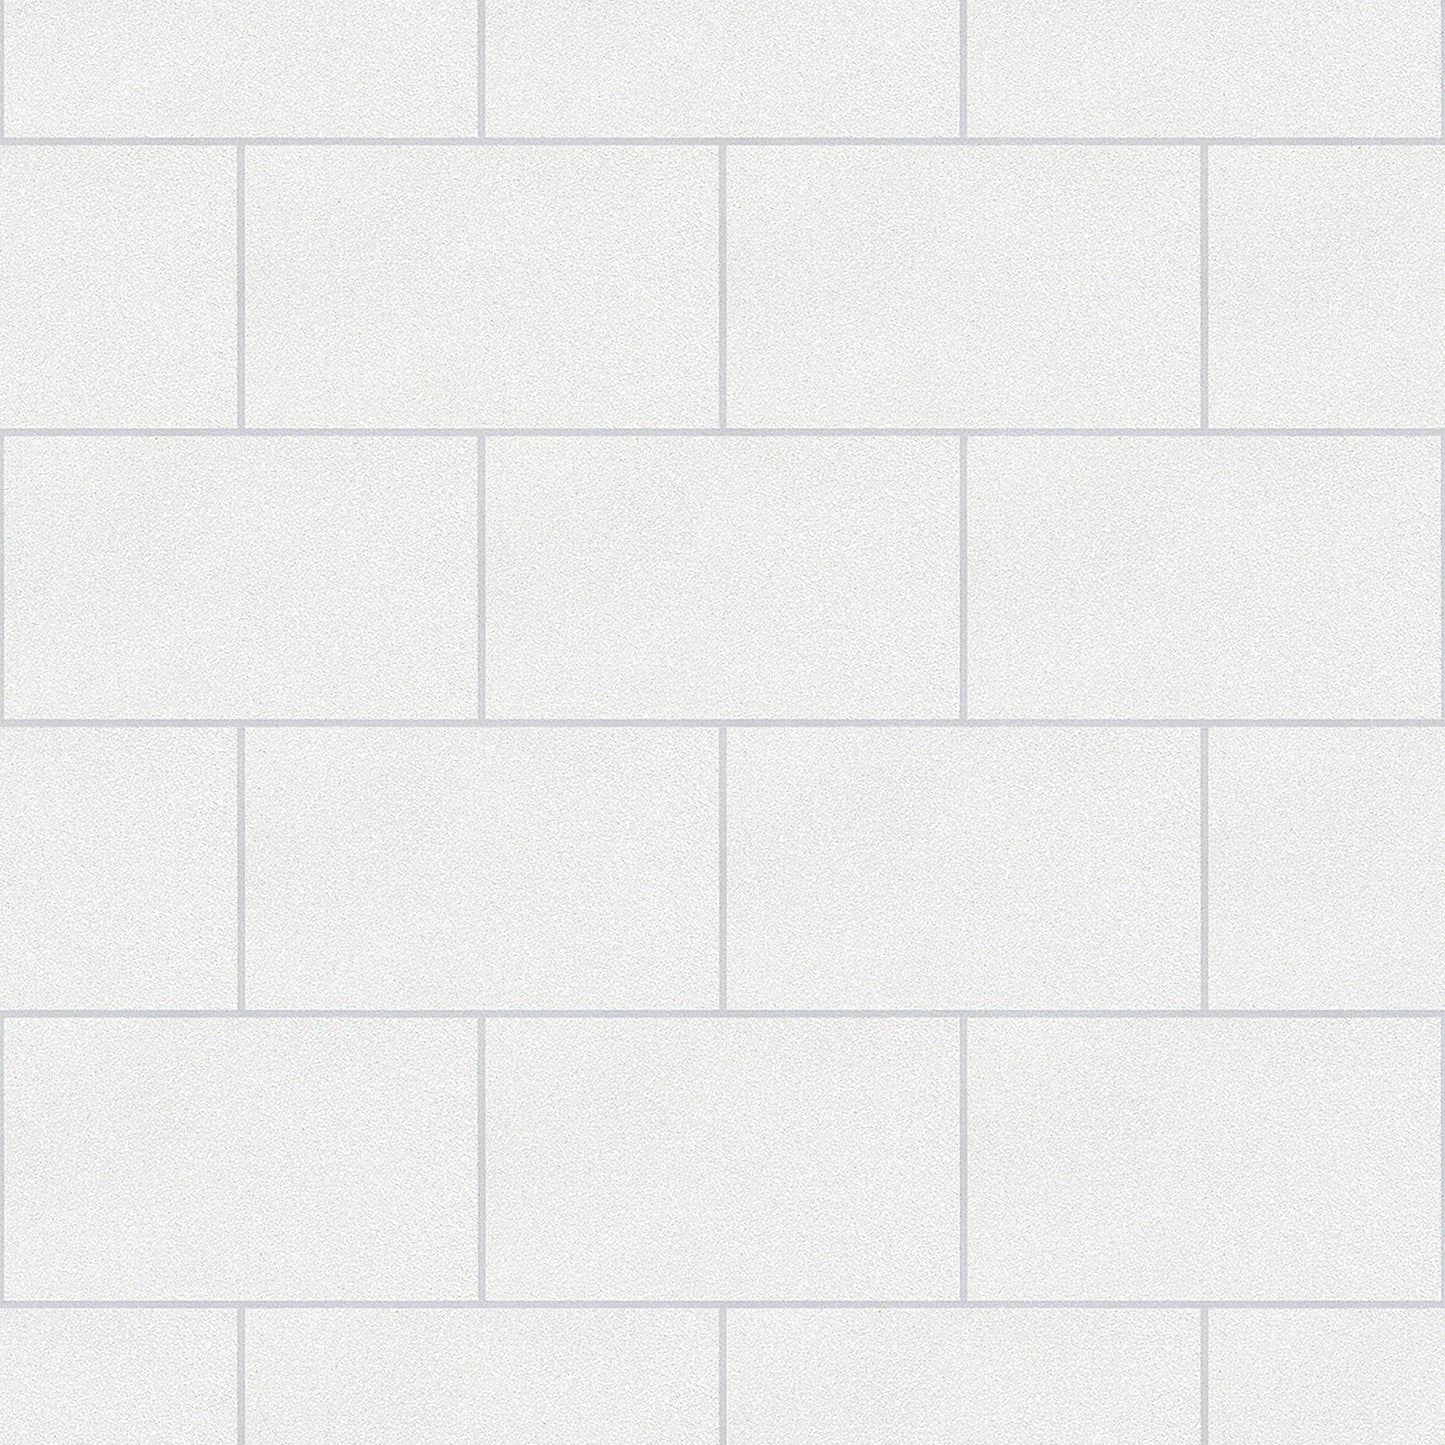 View 2814-M1054 Bath Whites & Off-Whites Tiles Wallpaper by Advantage